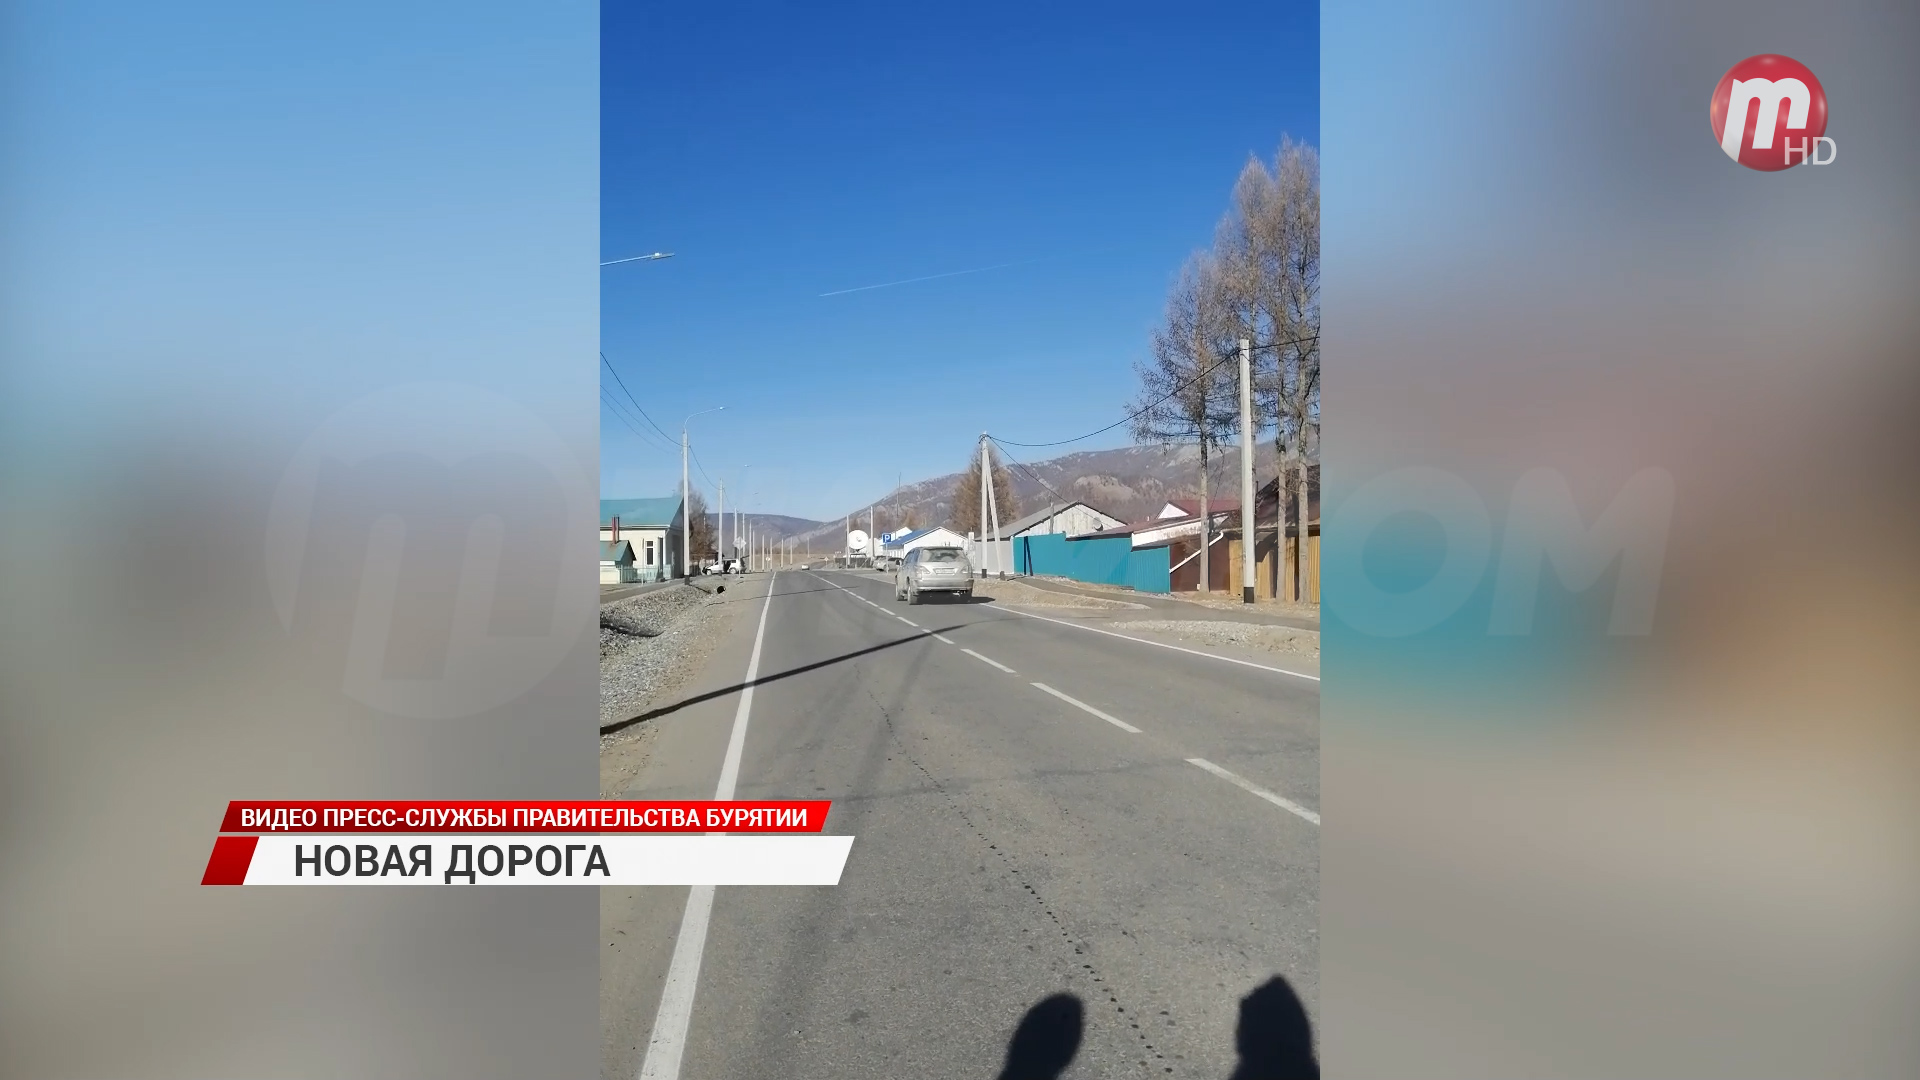 В Окинском районе отремонтировали автомобильные трассы, ведущие к селу Орлик